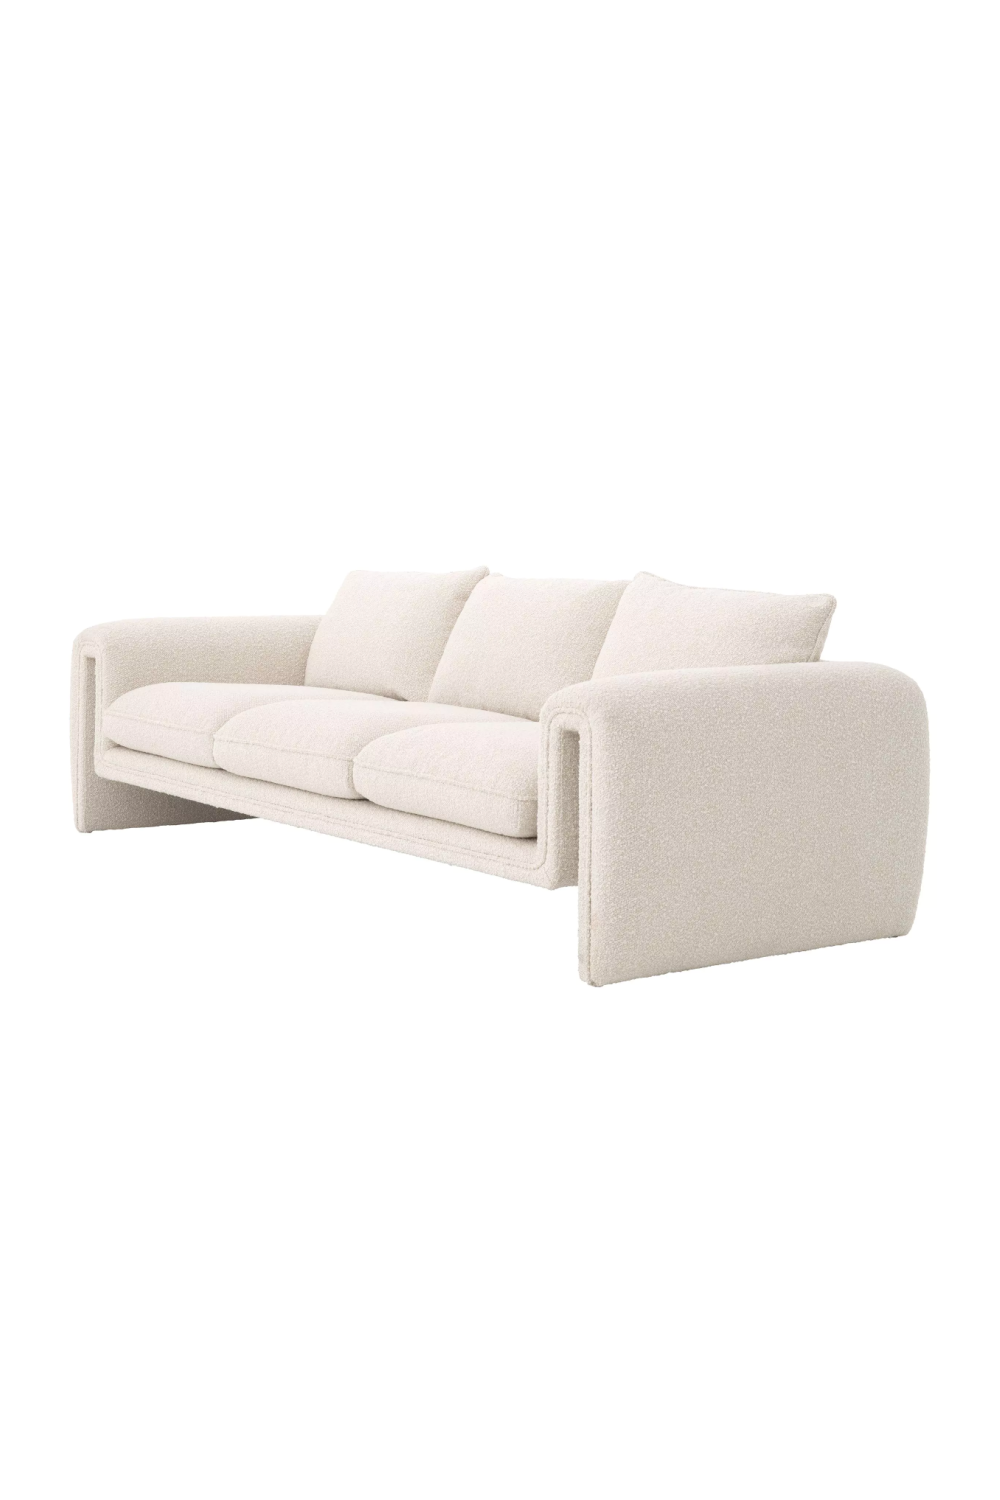 Cream Bouclé Upholstered Sofa | Eichholtz Tondo | Oroa.com